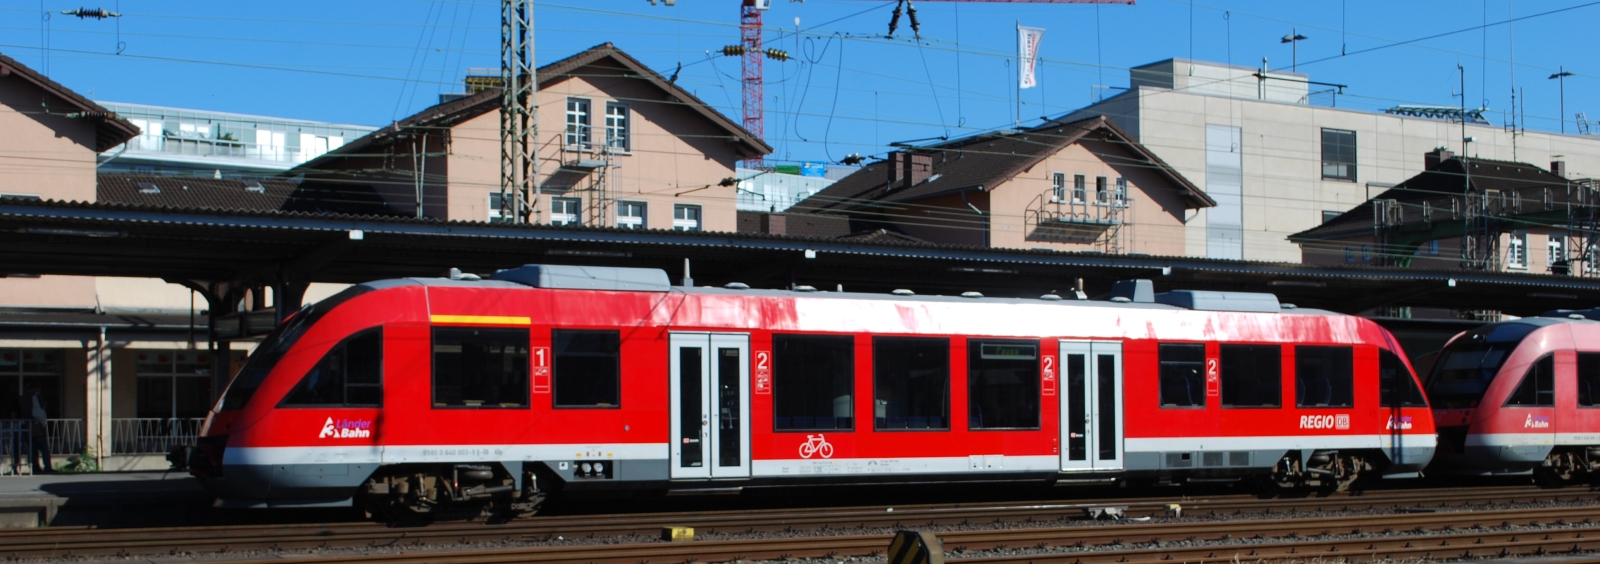 DB Regio LINT 27 in June 2011 in Siegen